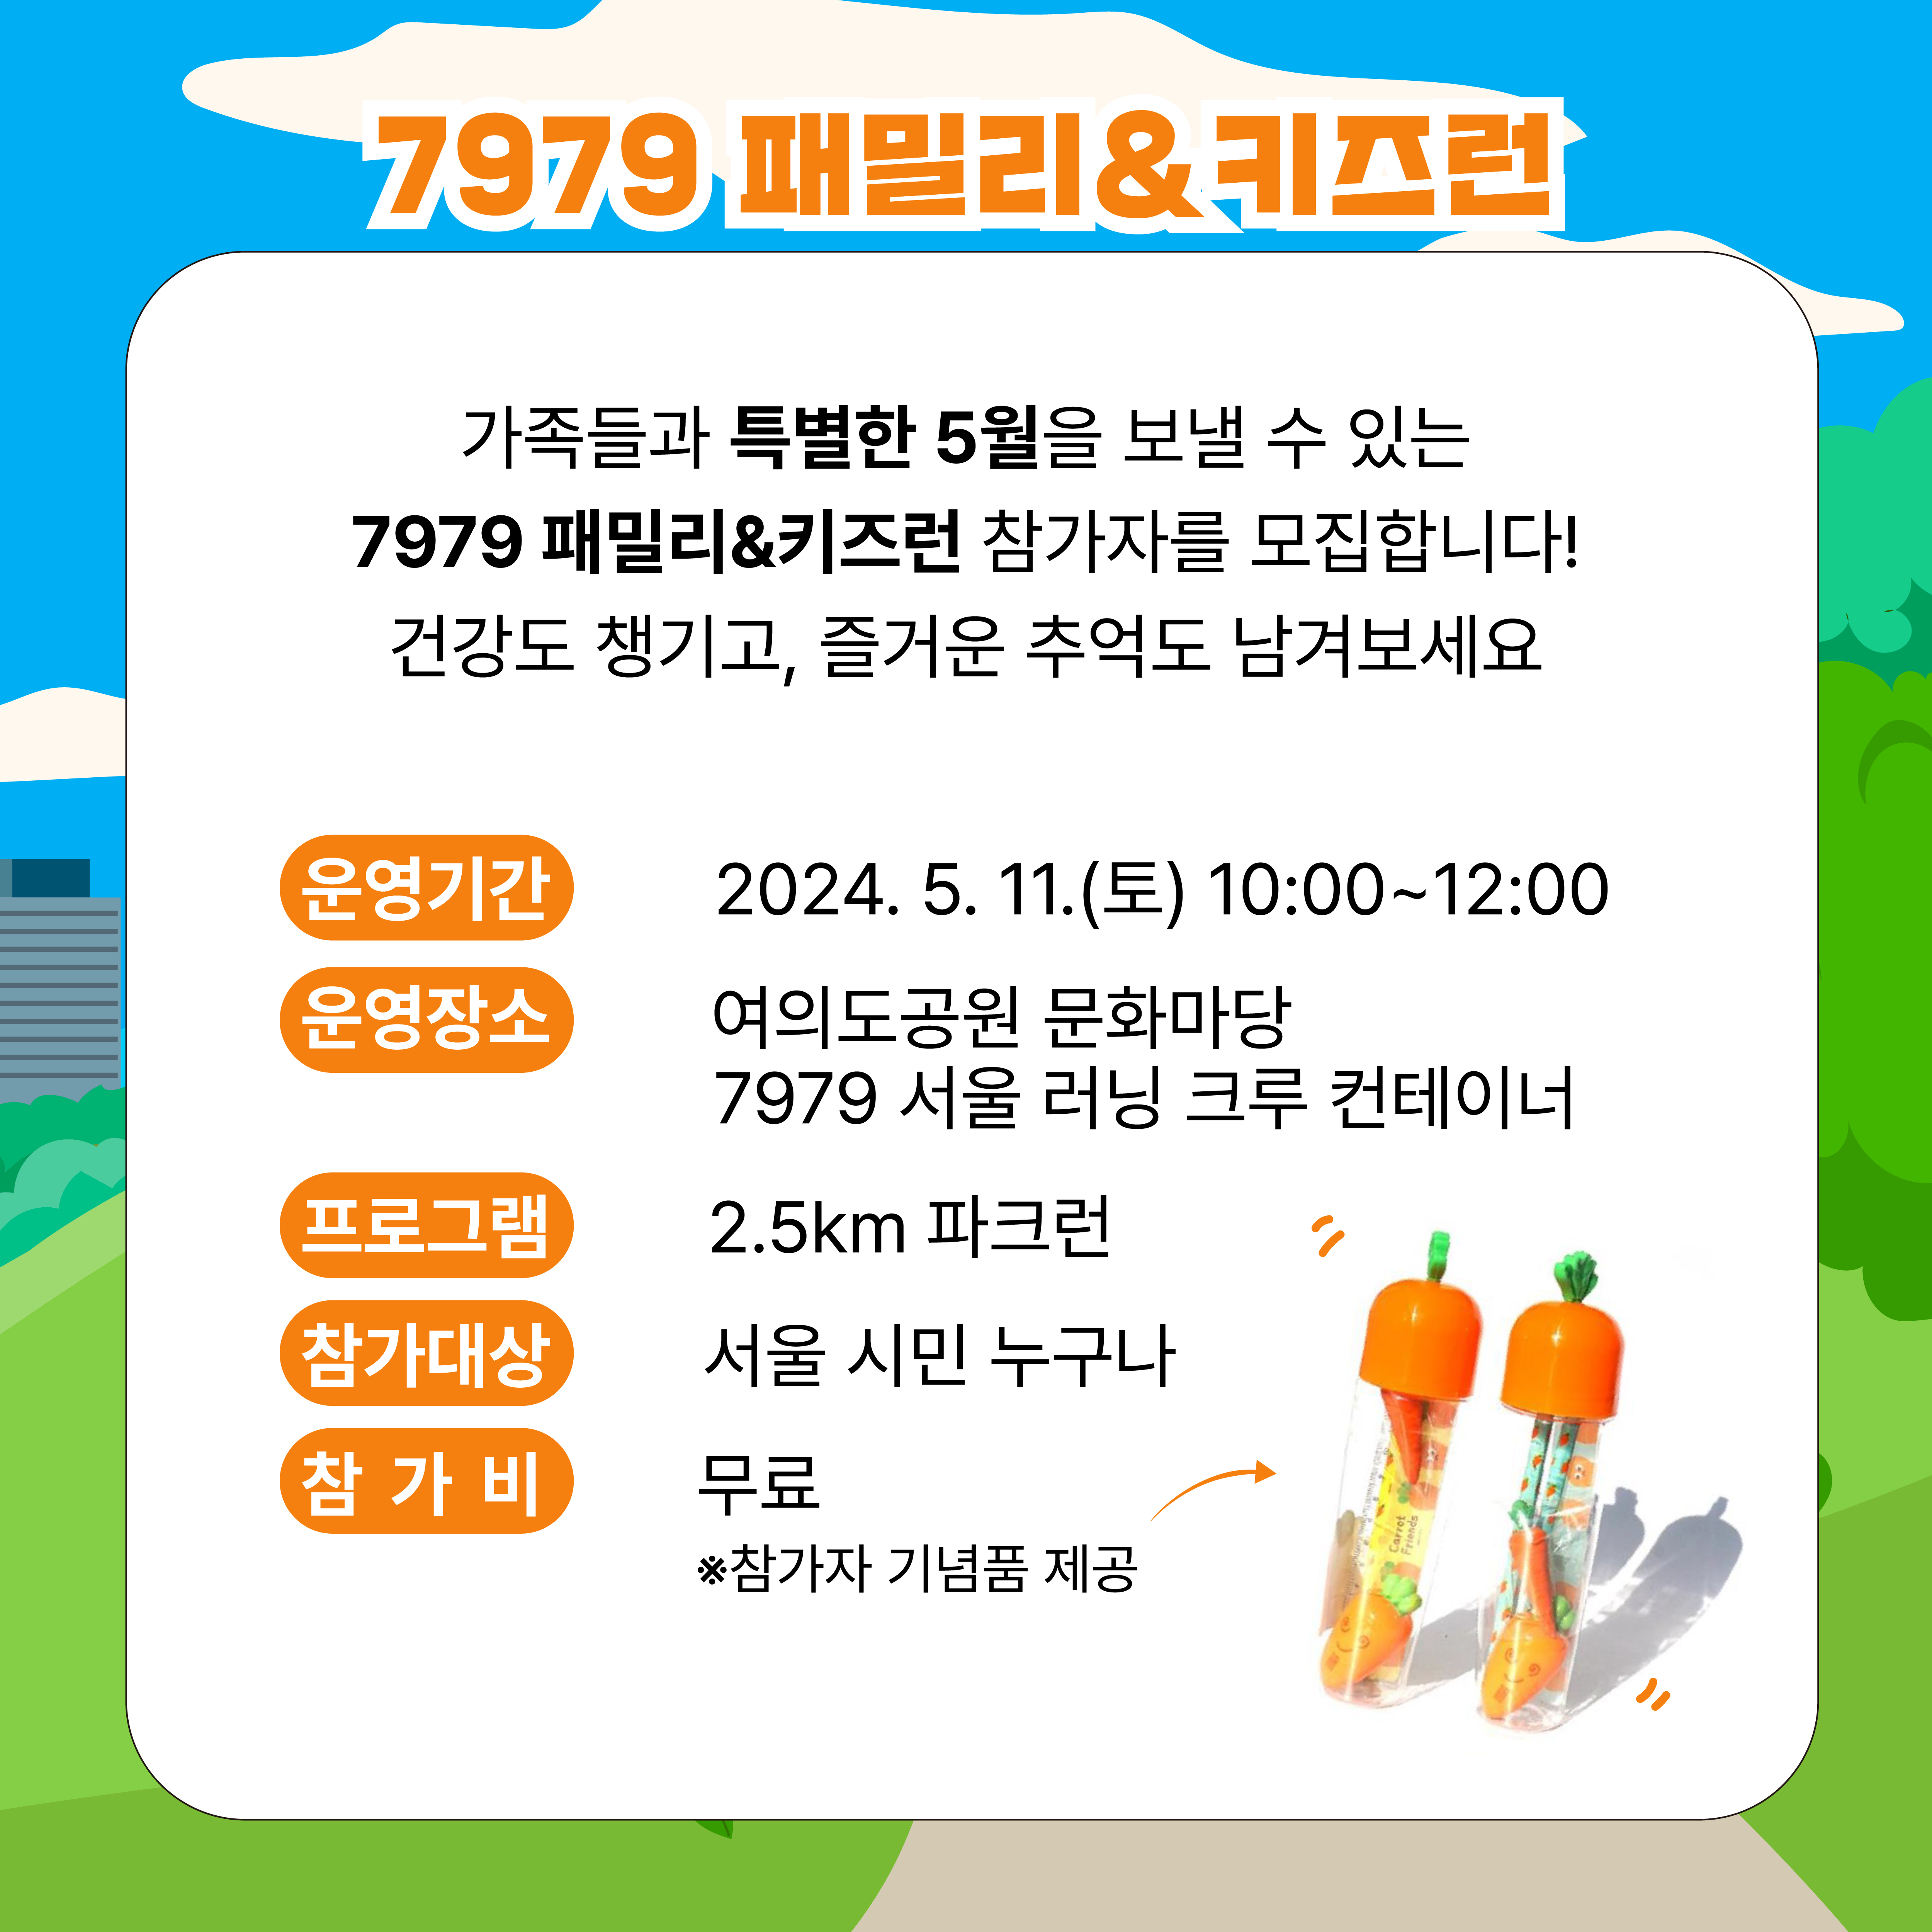 매주 목요일 밤 서울 도심 속에서 함께 달리고 있는 7979 서울 러닝크루에서 5월 스페셜 세션,
[7979 패밀리&키즈 런]에 여러분을 초대합니다.
